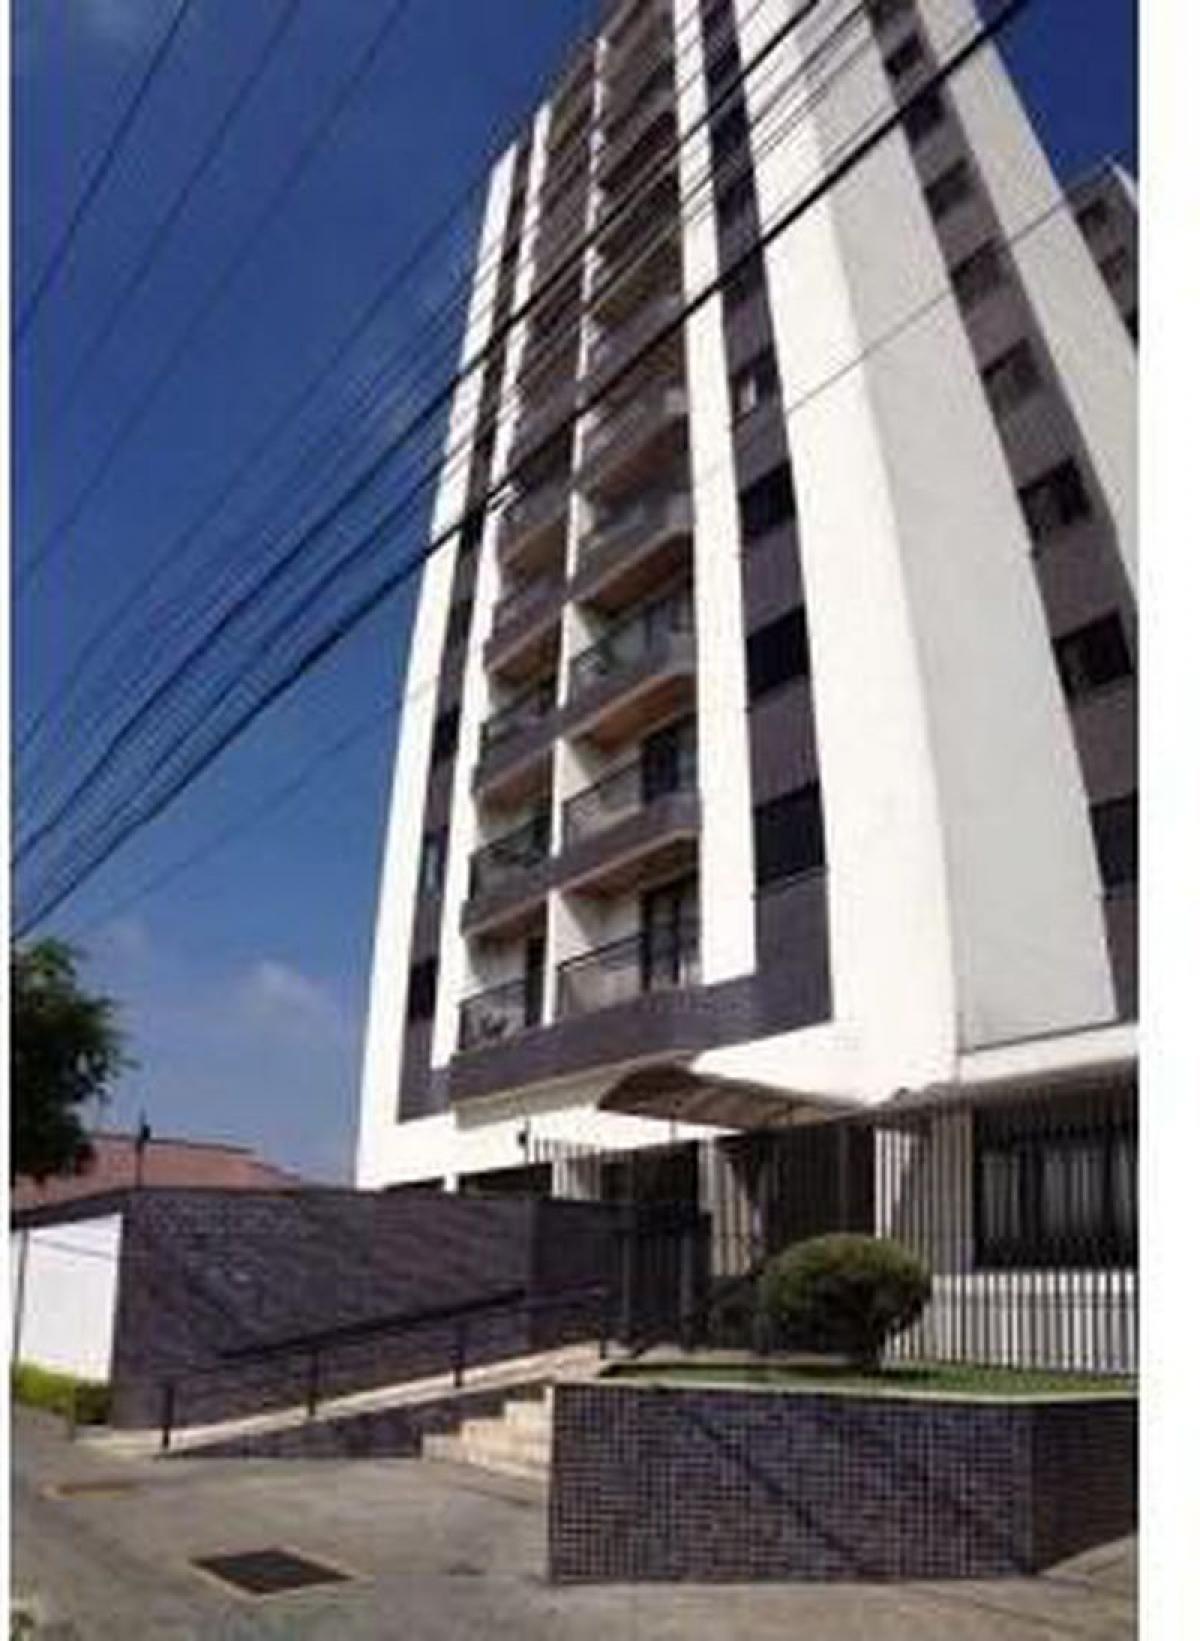 Picture of Apartment For Sale in Suzano, Sao Paulo, Brazil